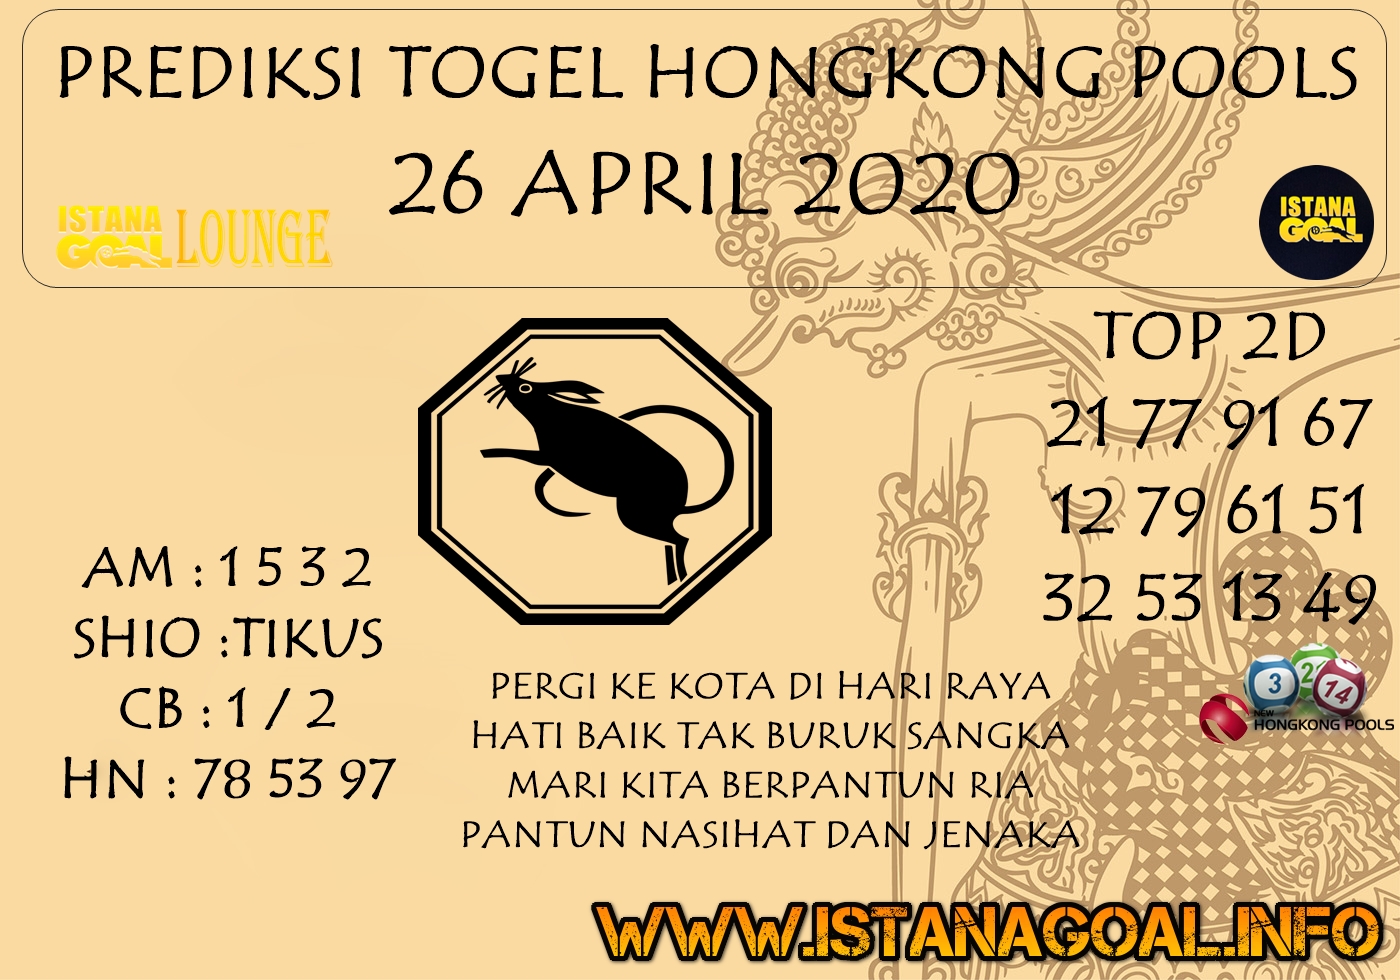 PREDIKSI TOGEL HONGKONG POOLS 26 APRIL 2020